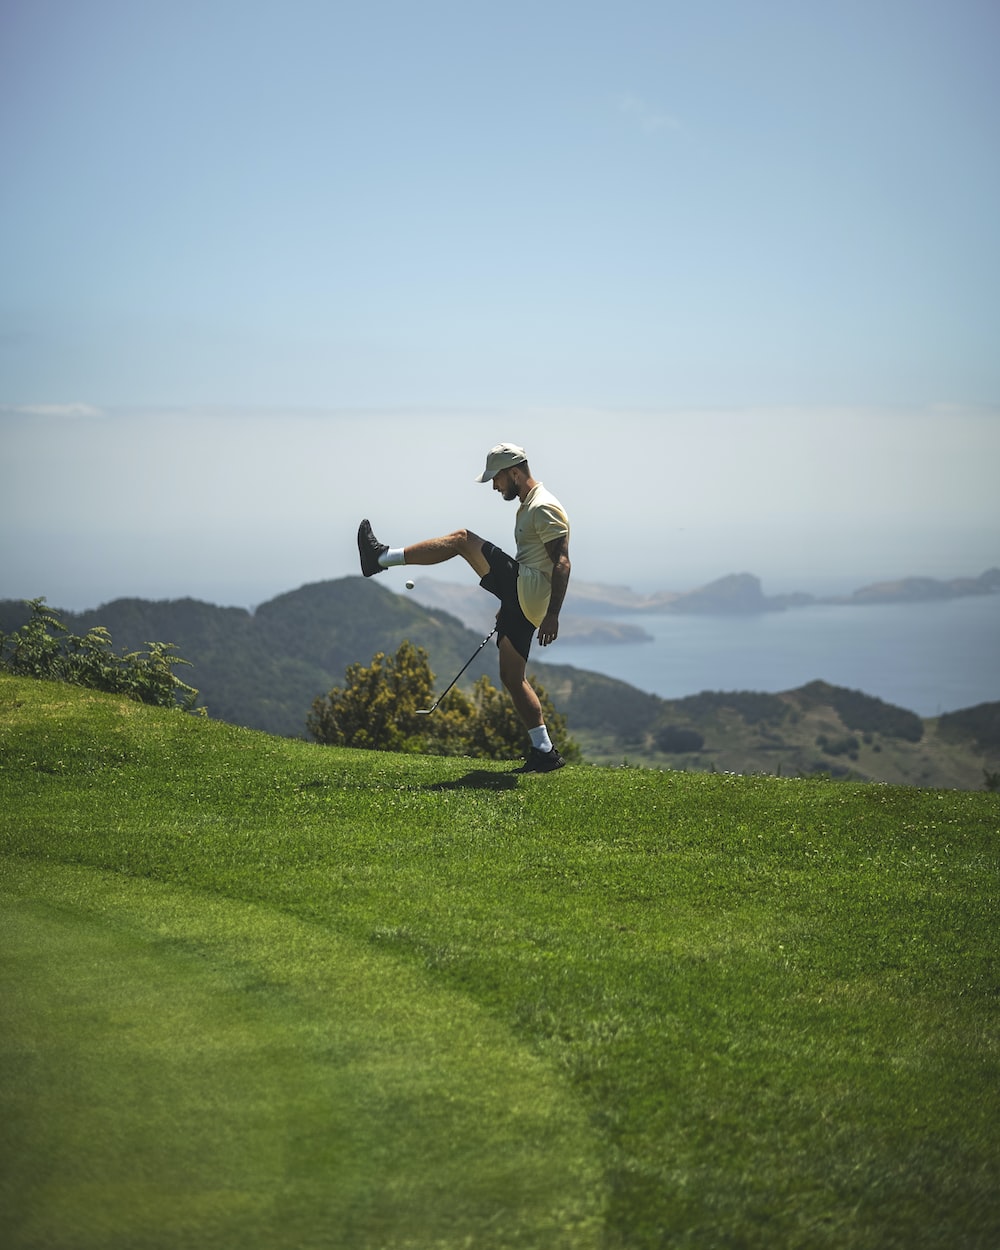 a man on a golf course kicking a ball